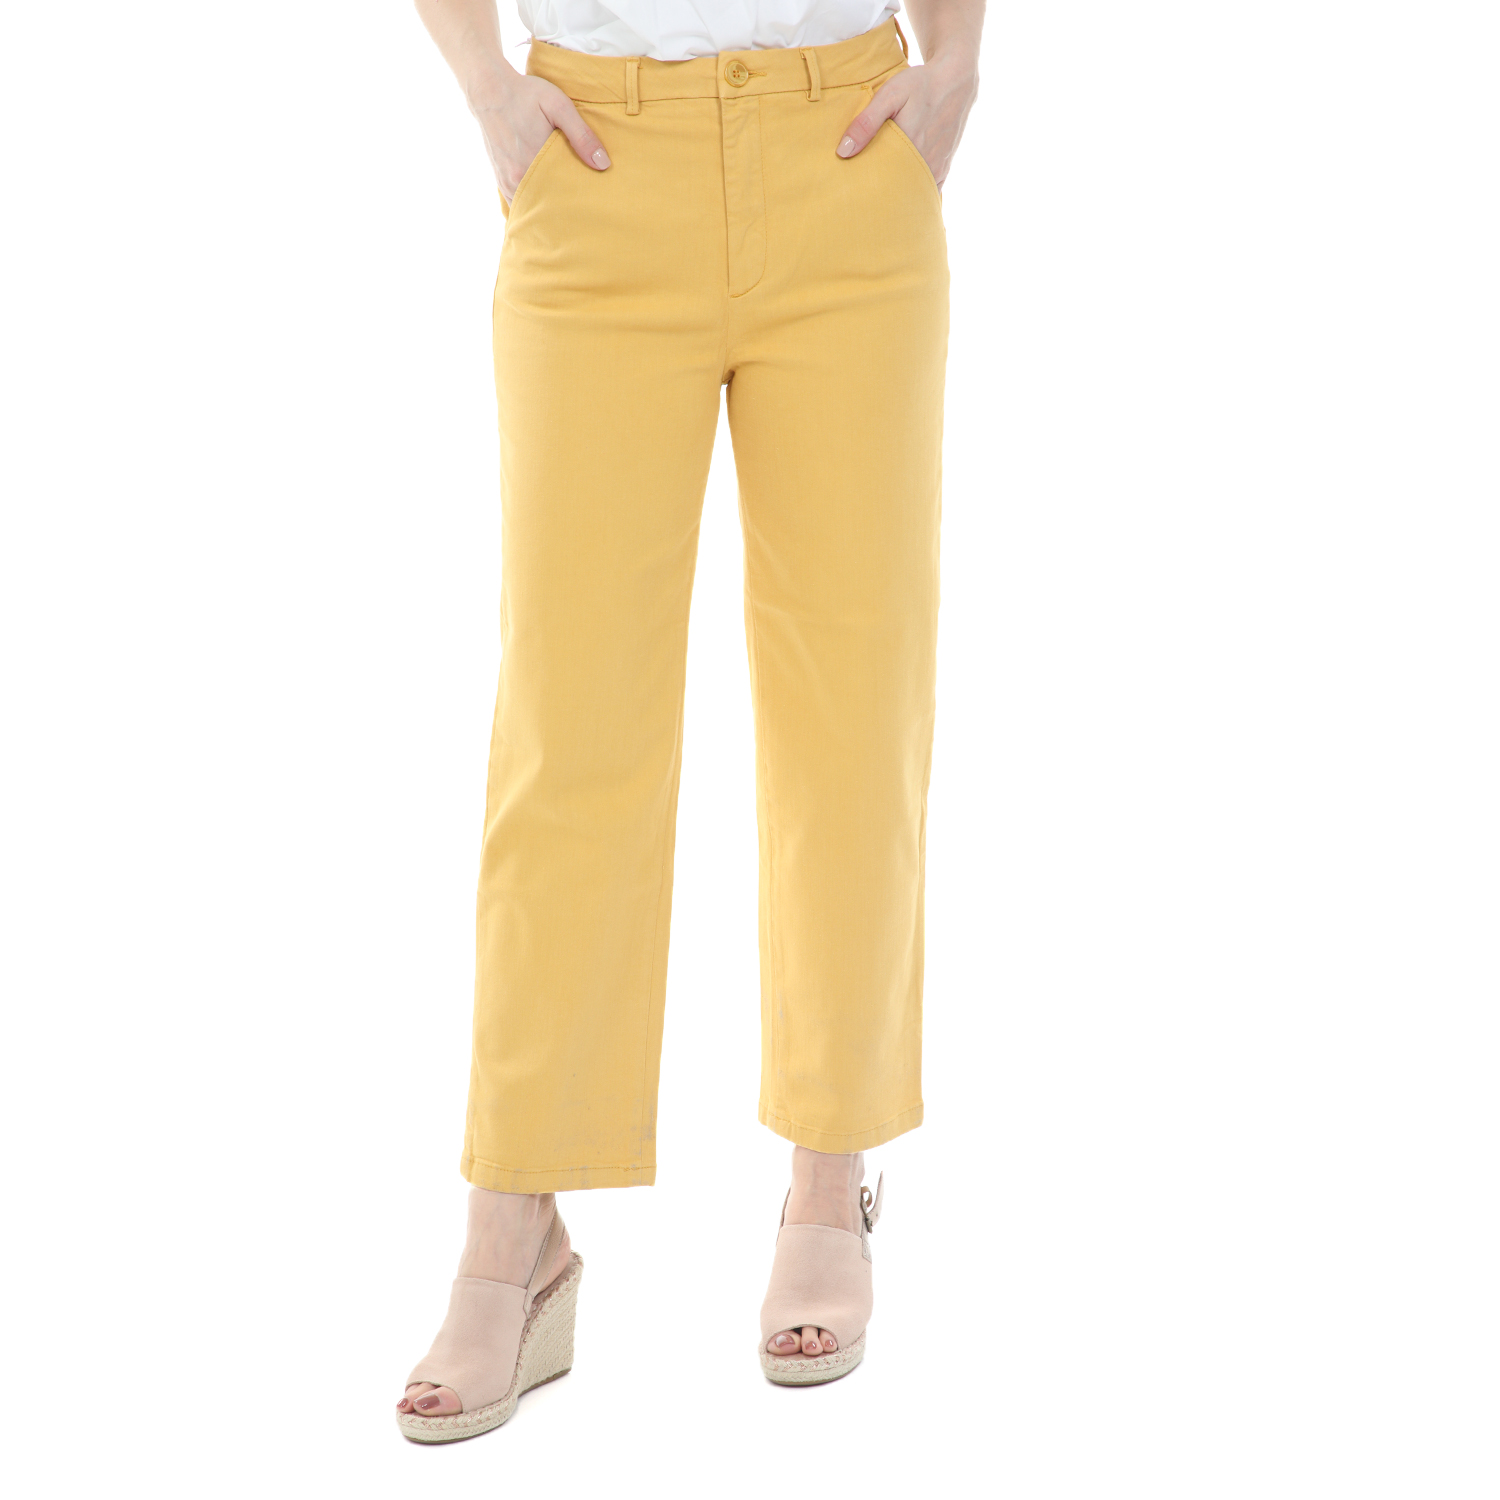 Γυναικεία/Ρούχα/Παντελόνια/Ισια Γραμμή REIKO - Γυναικείο παντελόνι cropped REIKO SANDY HIGH κίτρινο